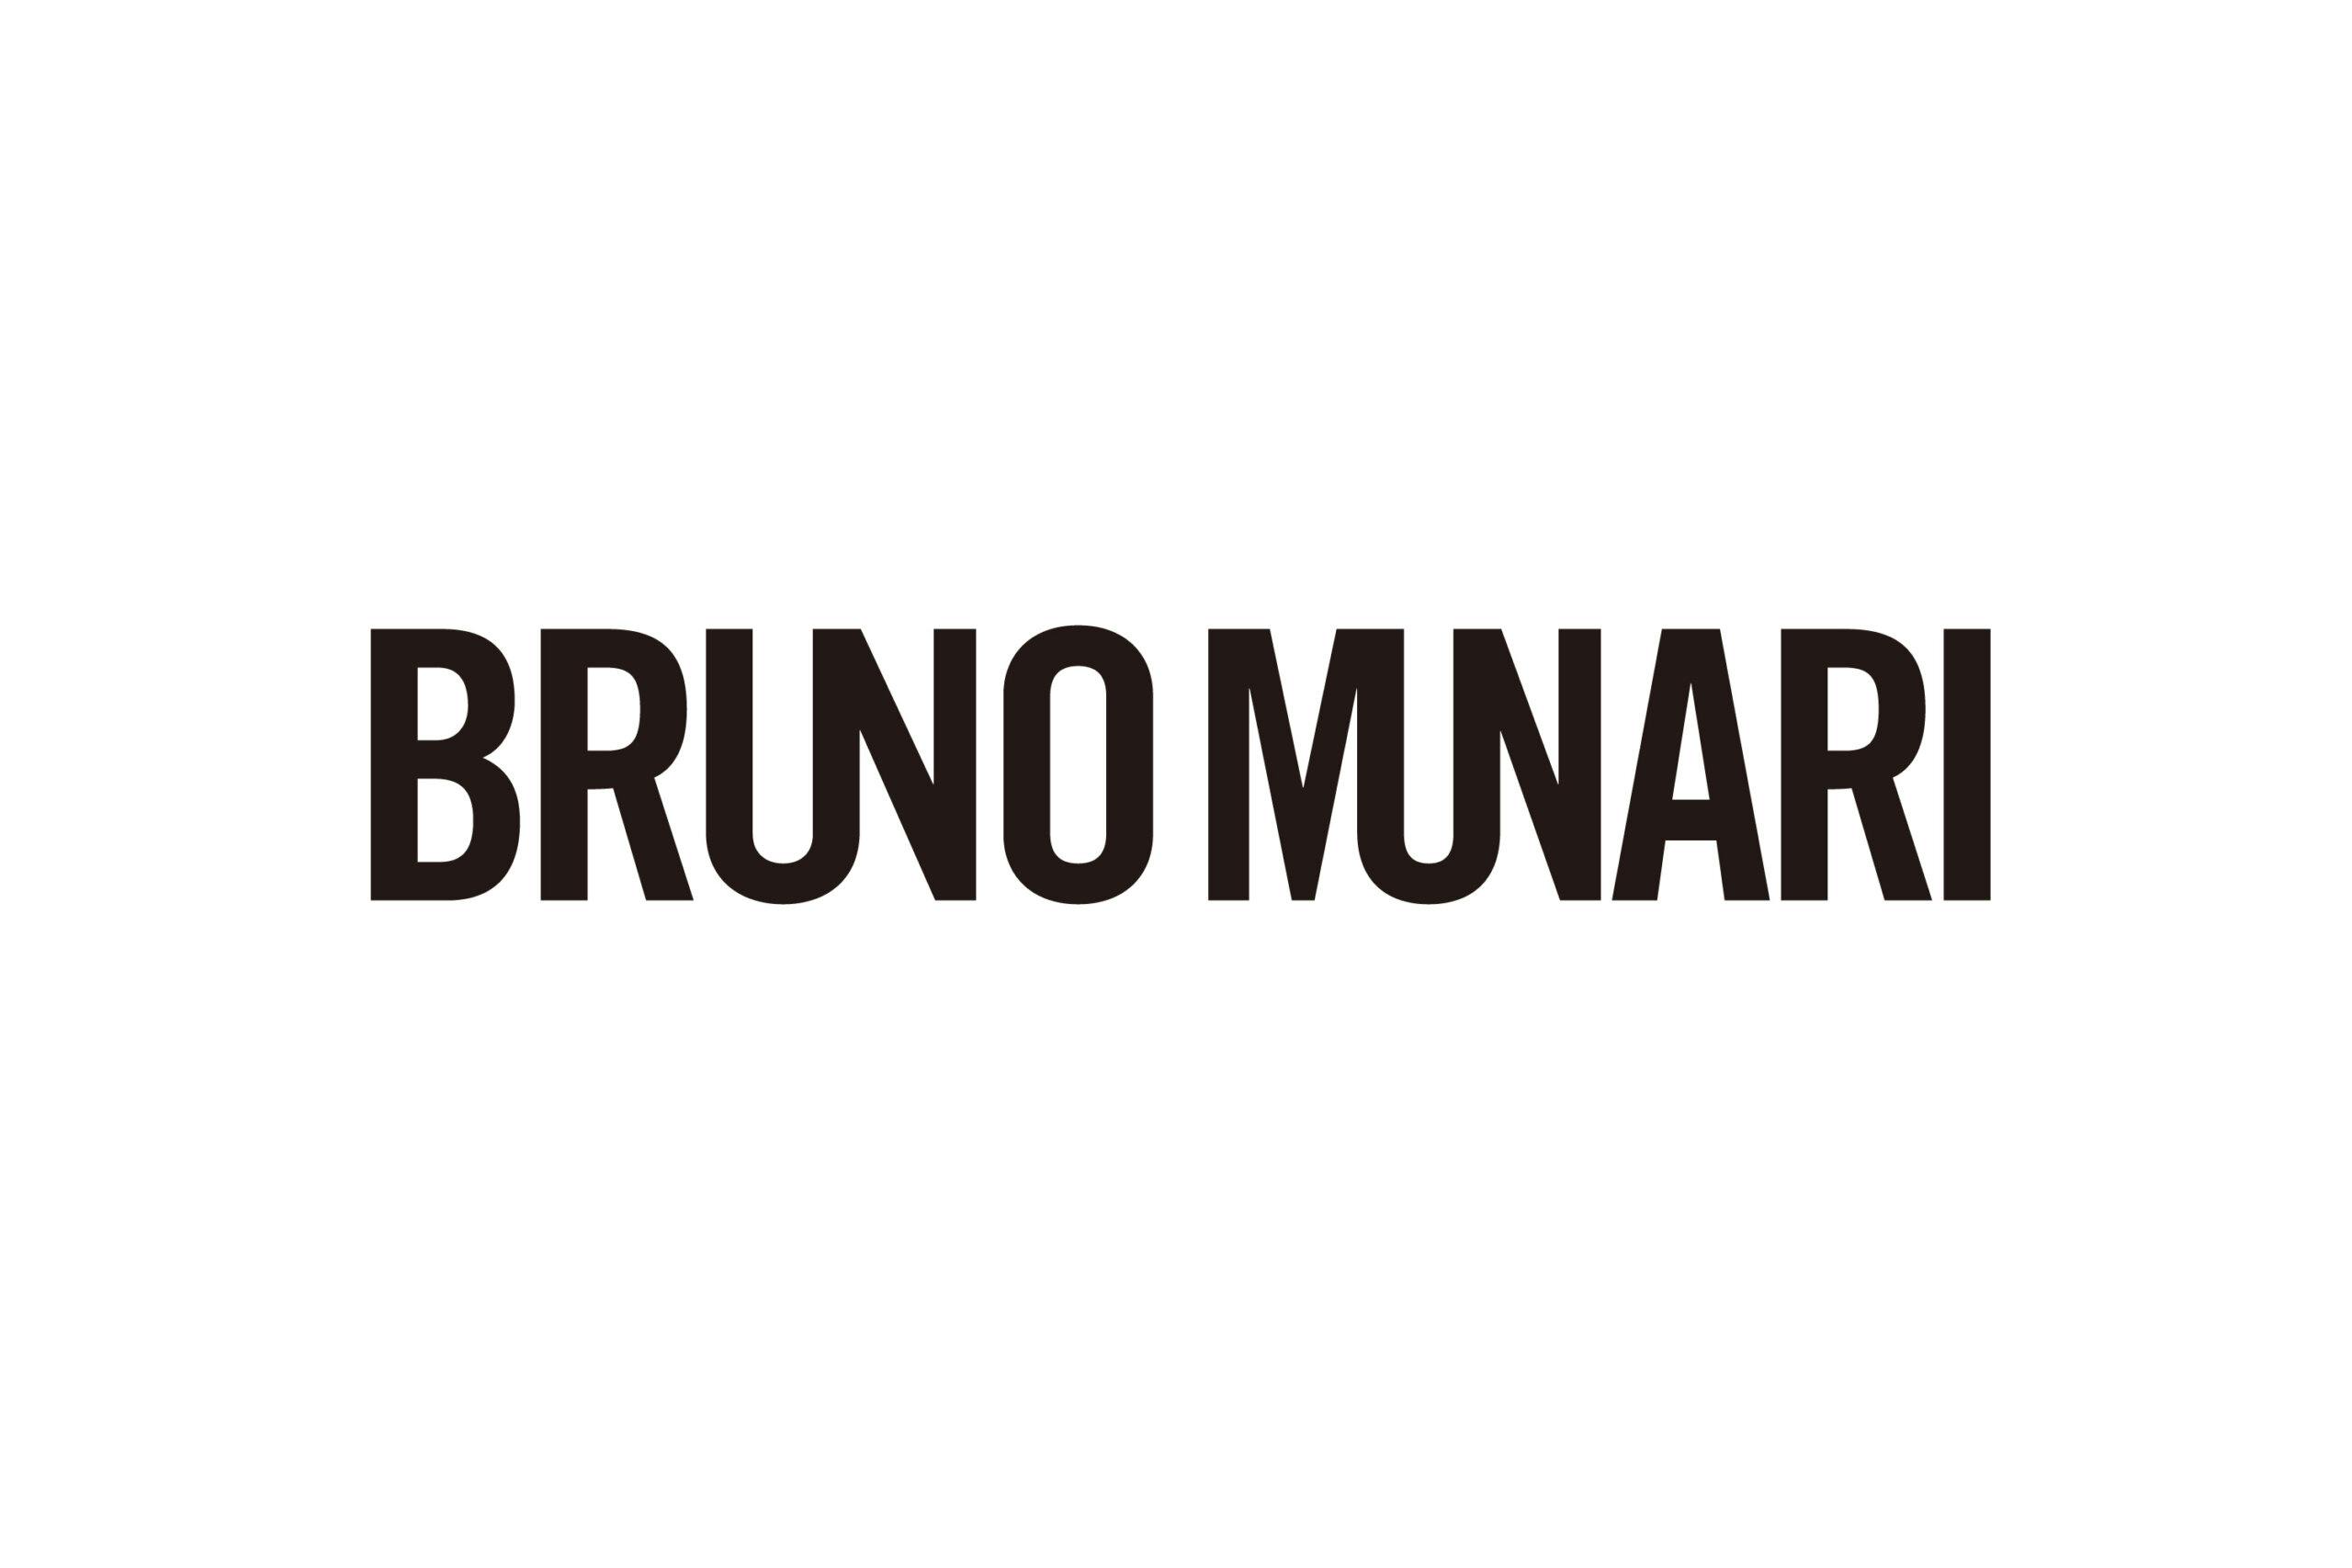 munari_logo